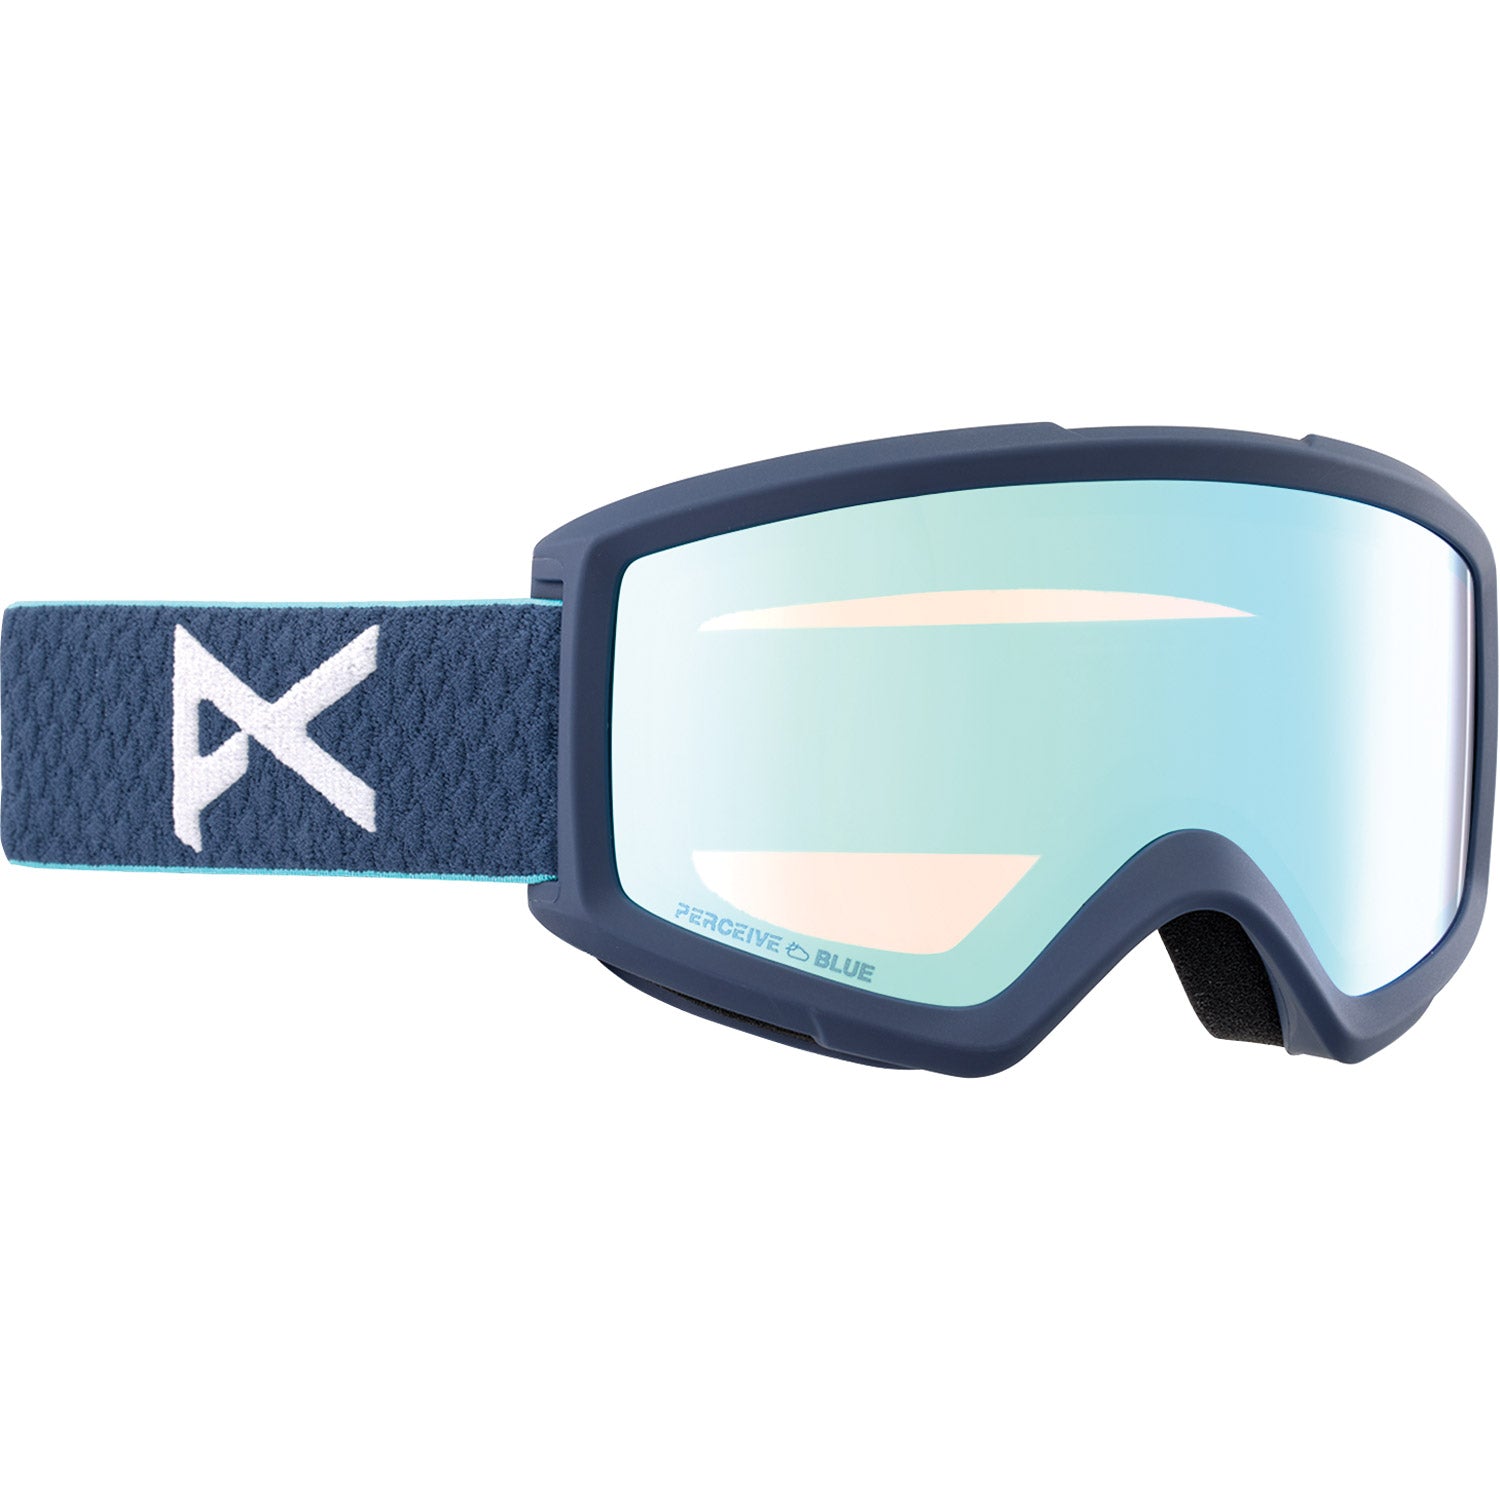 Helix 2.0 Low Bridge Snow Goggle